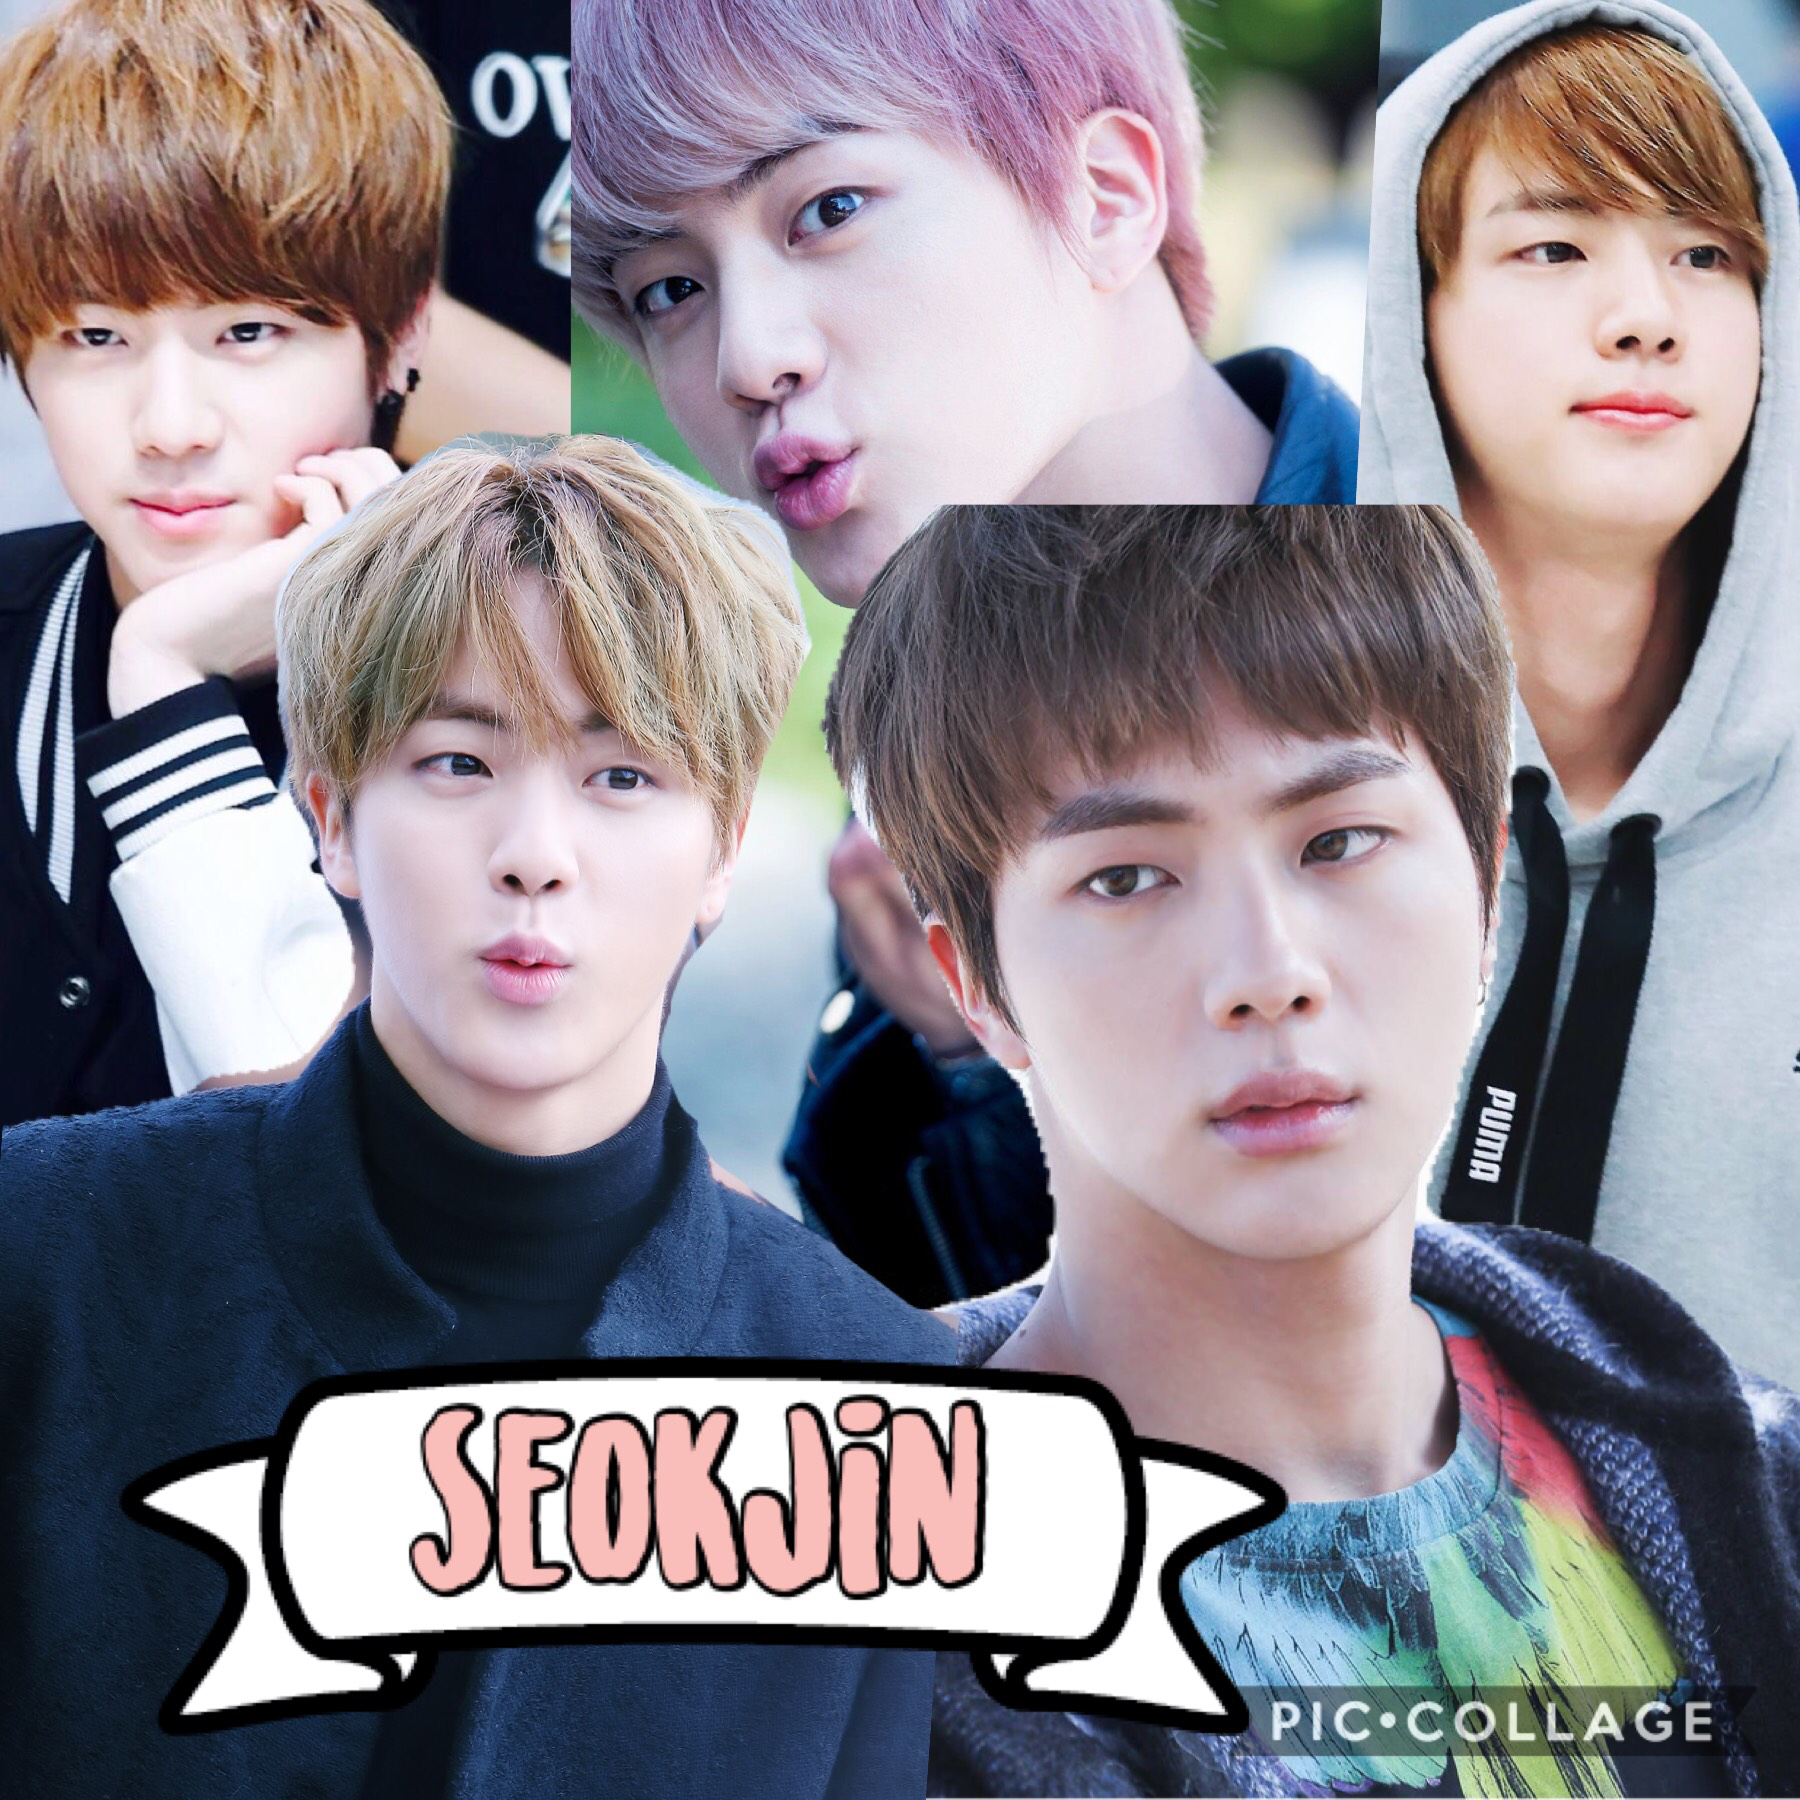 Seokjin is worldwide handsome in every way 😍😍